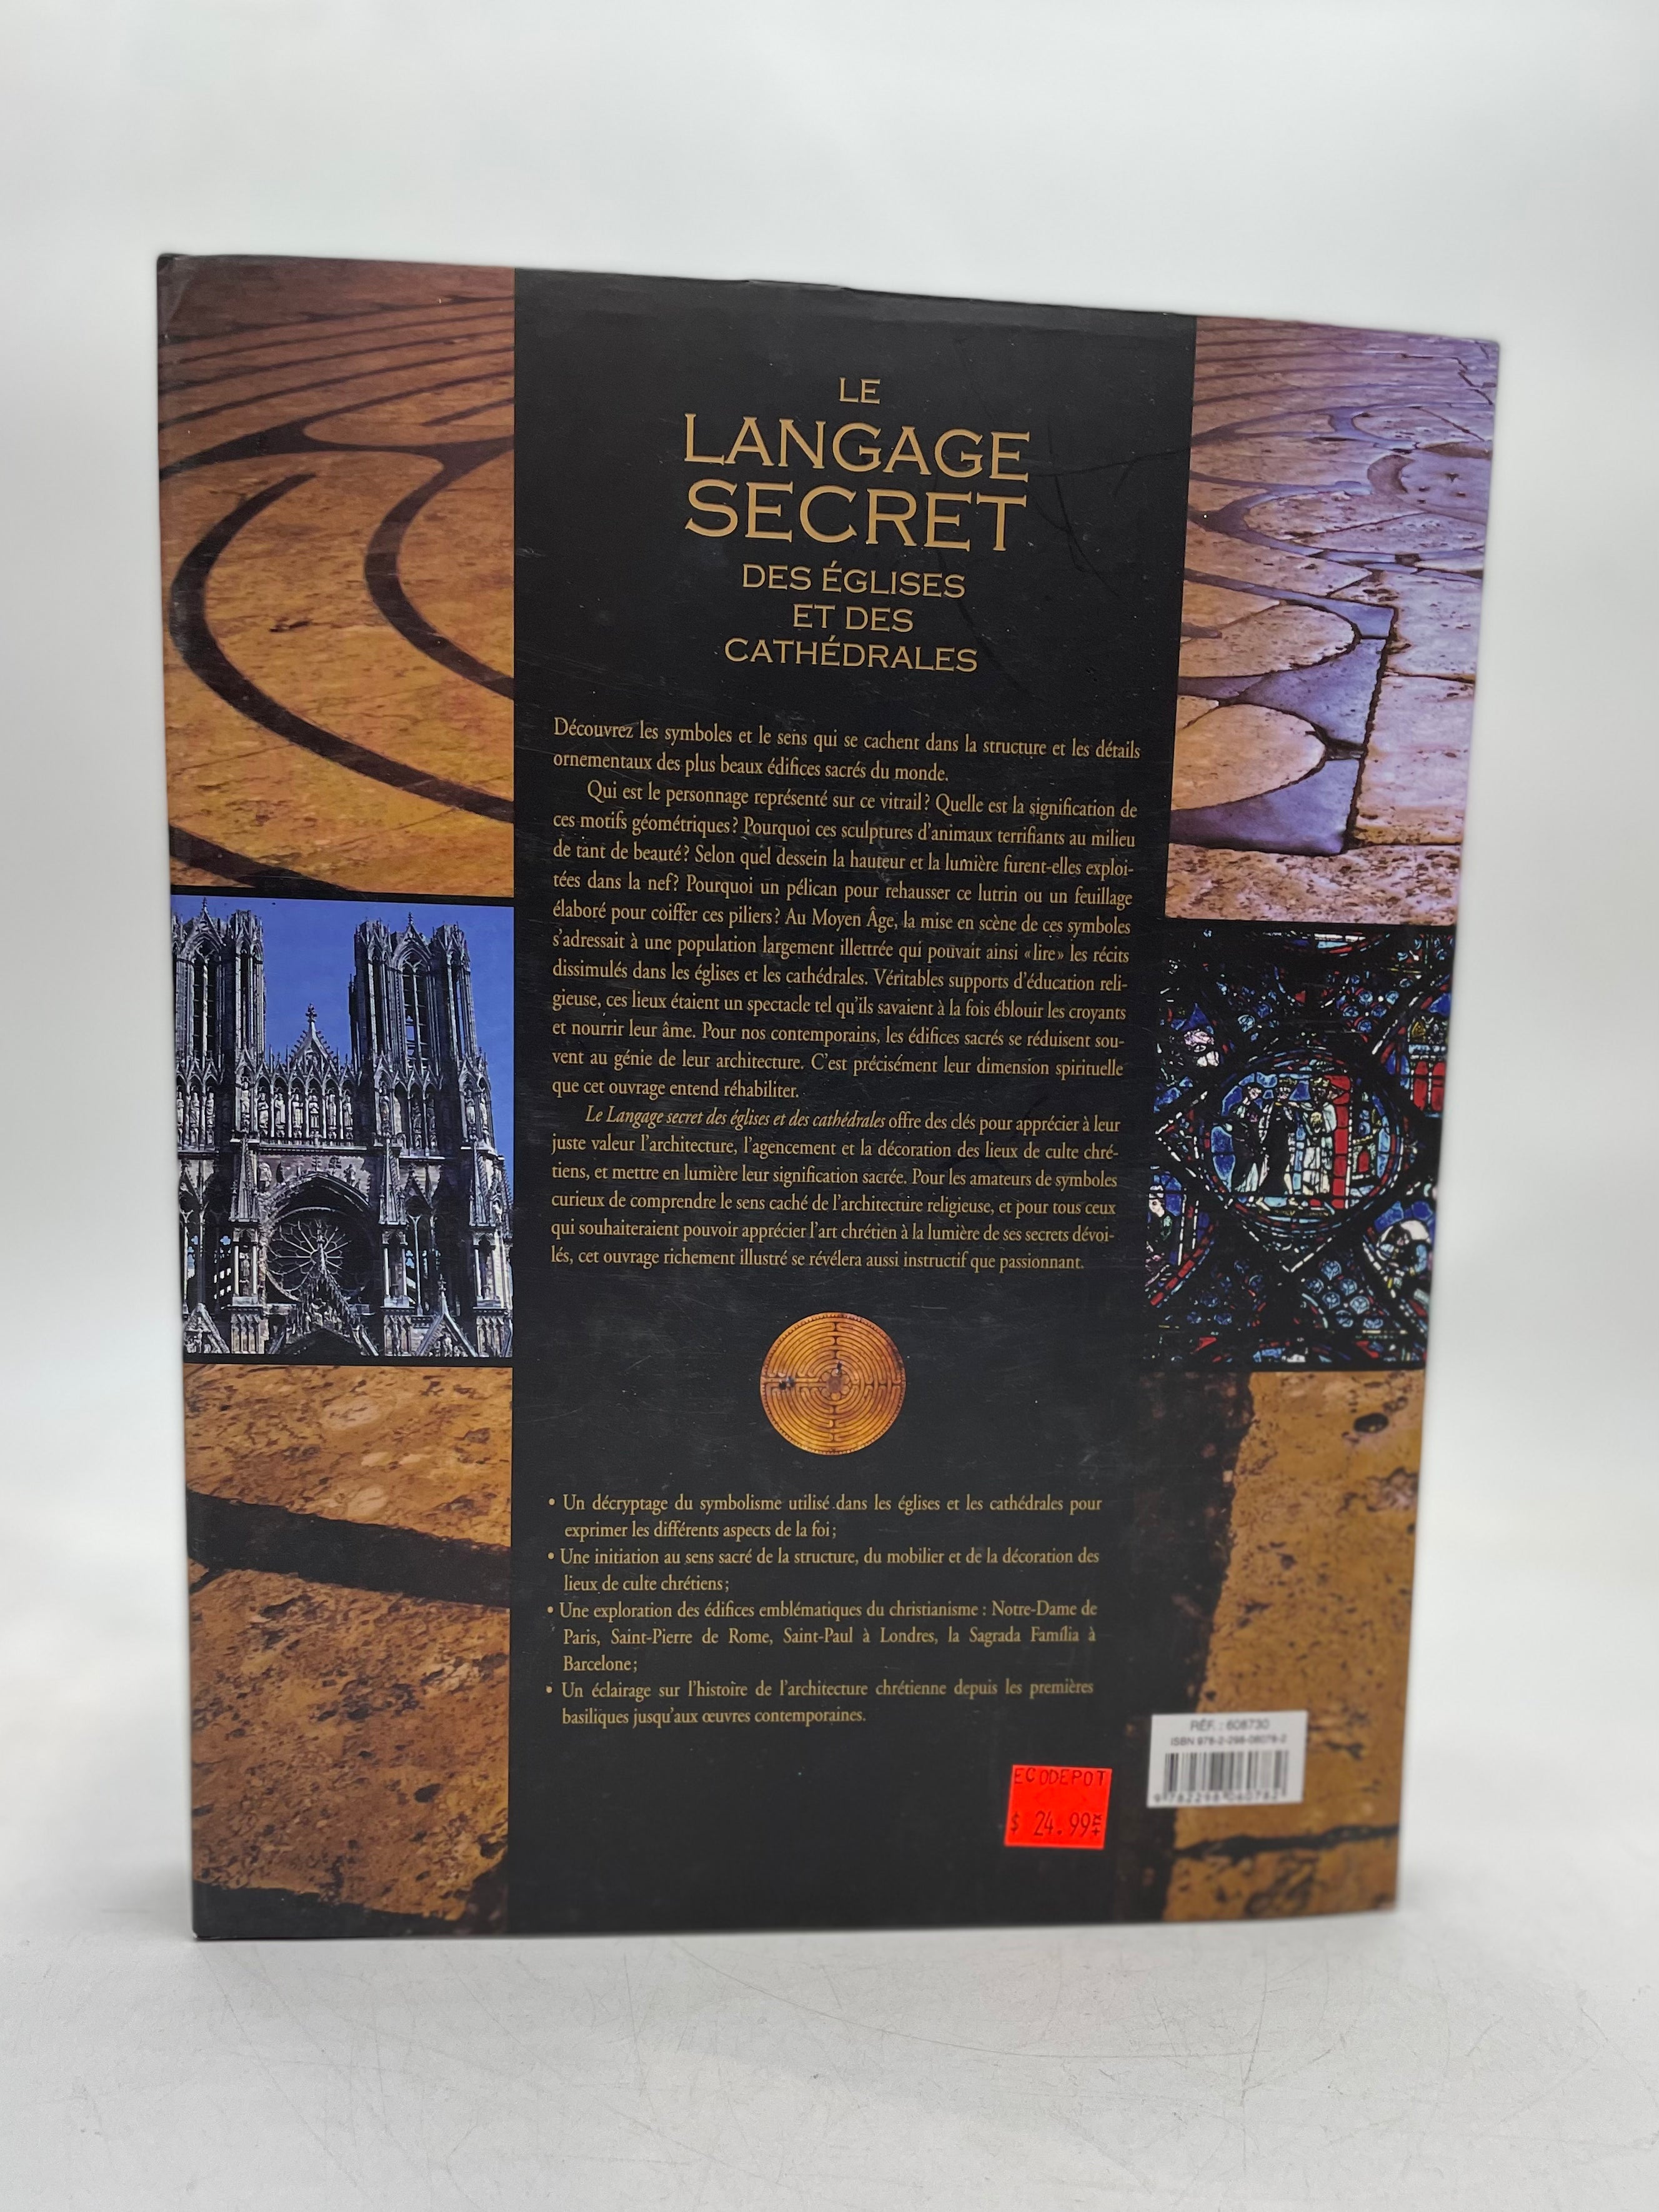 Le langage secret des églises et des cathédrales Livre relié, 2011